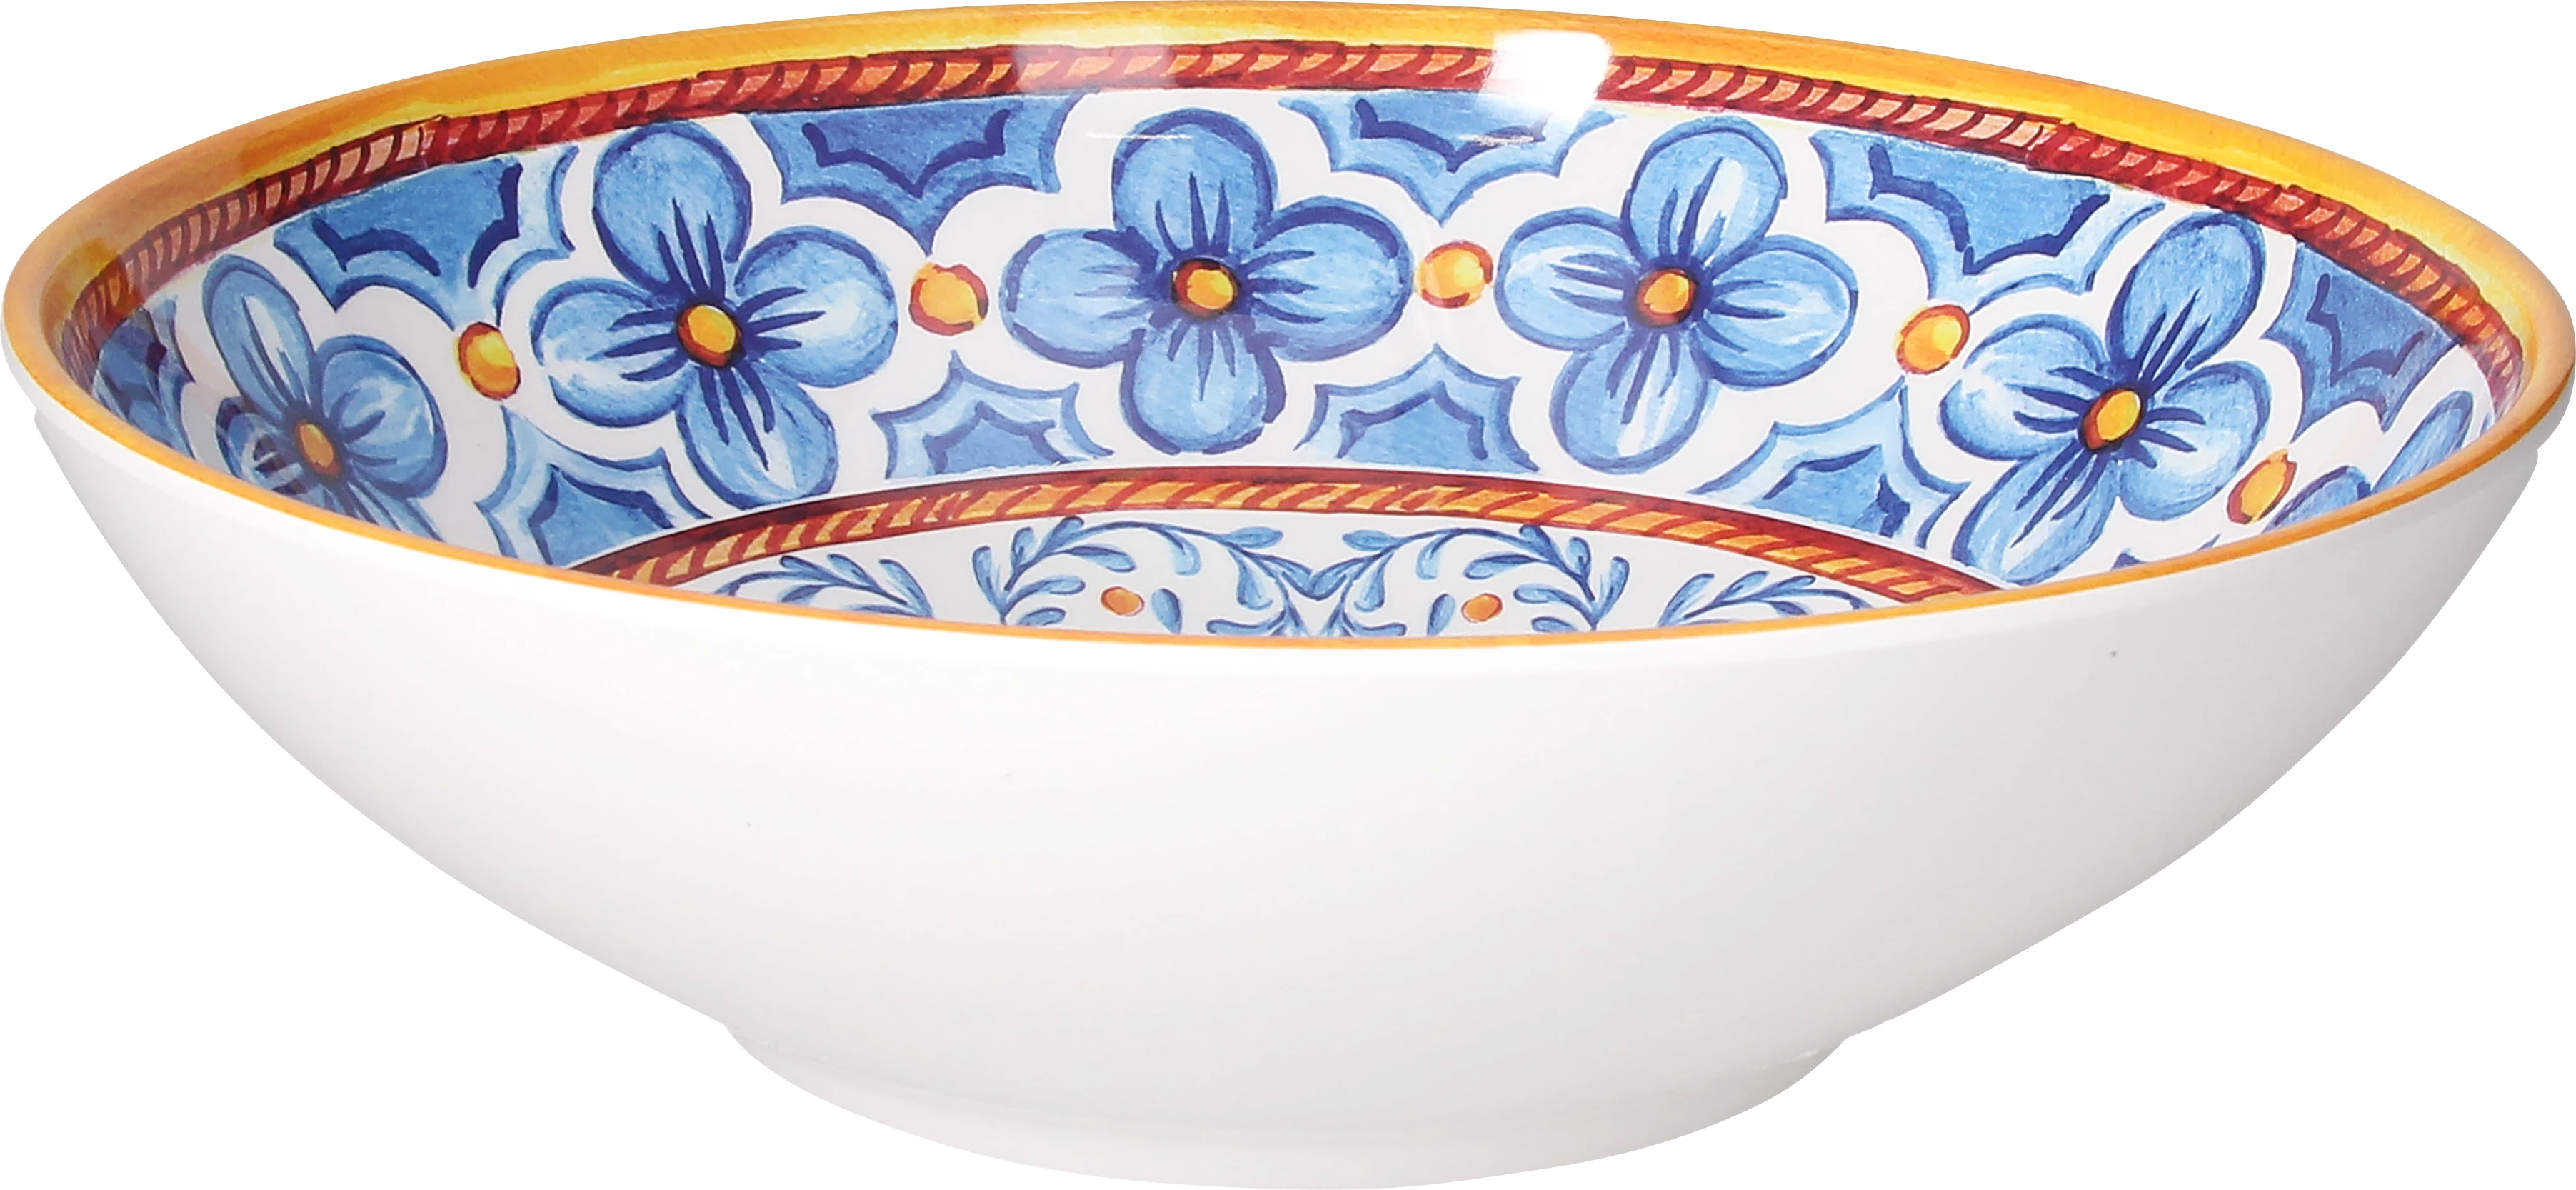 Tognana Narciso Cefalu skål, blå/orange, 320 cl, ø30 cm